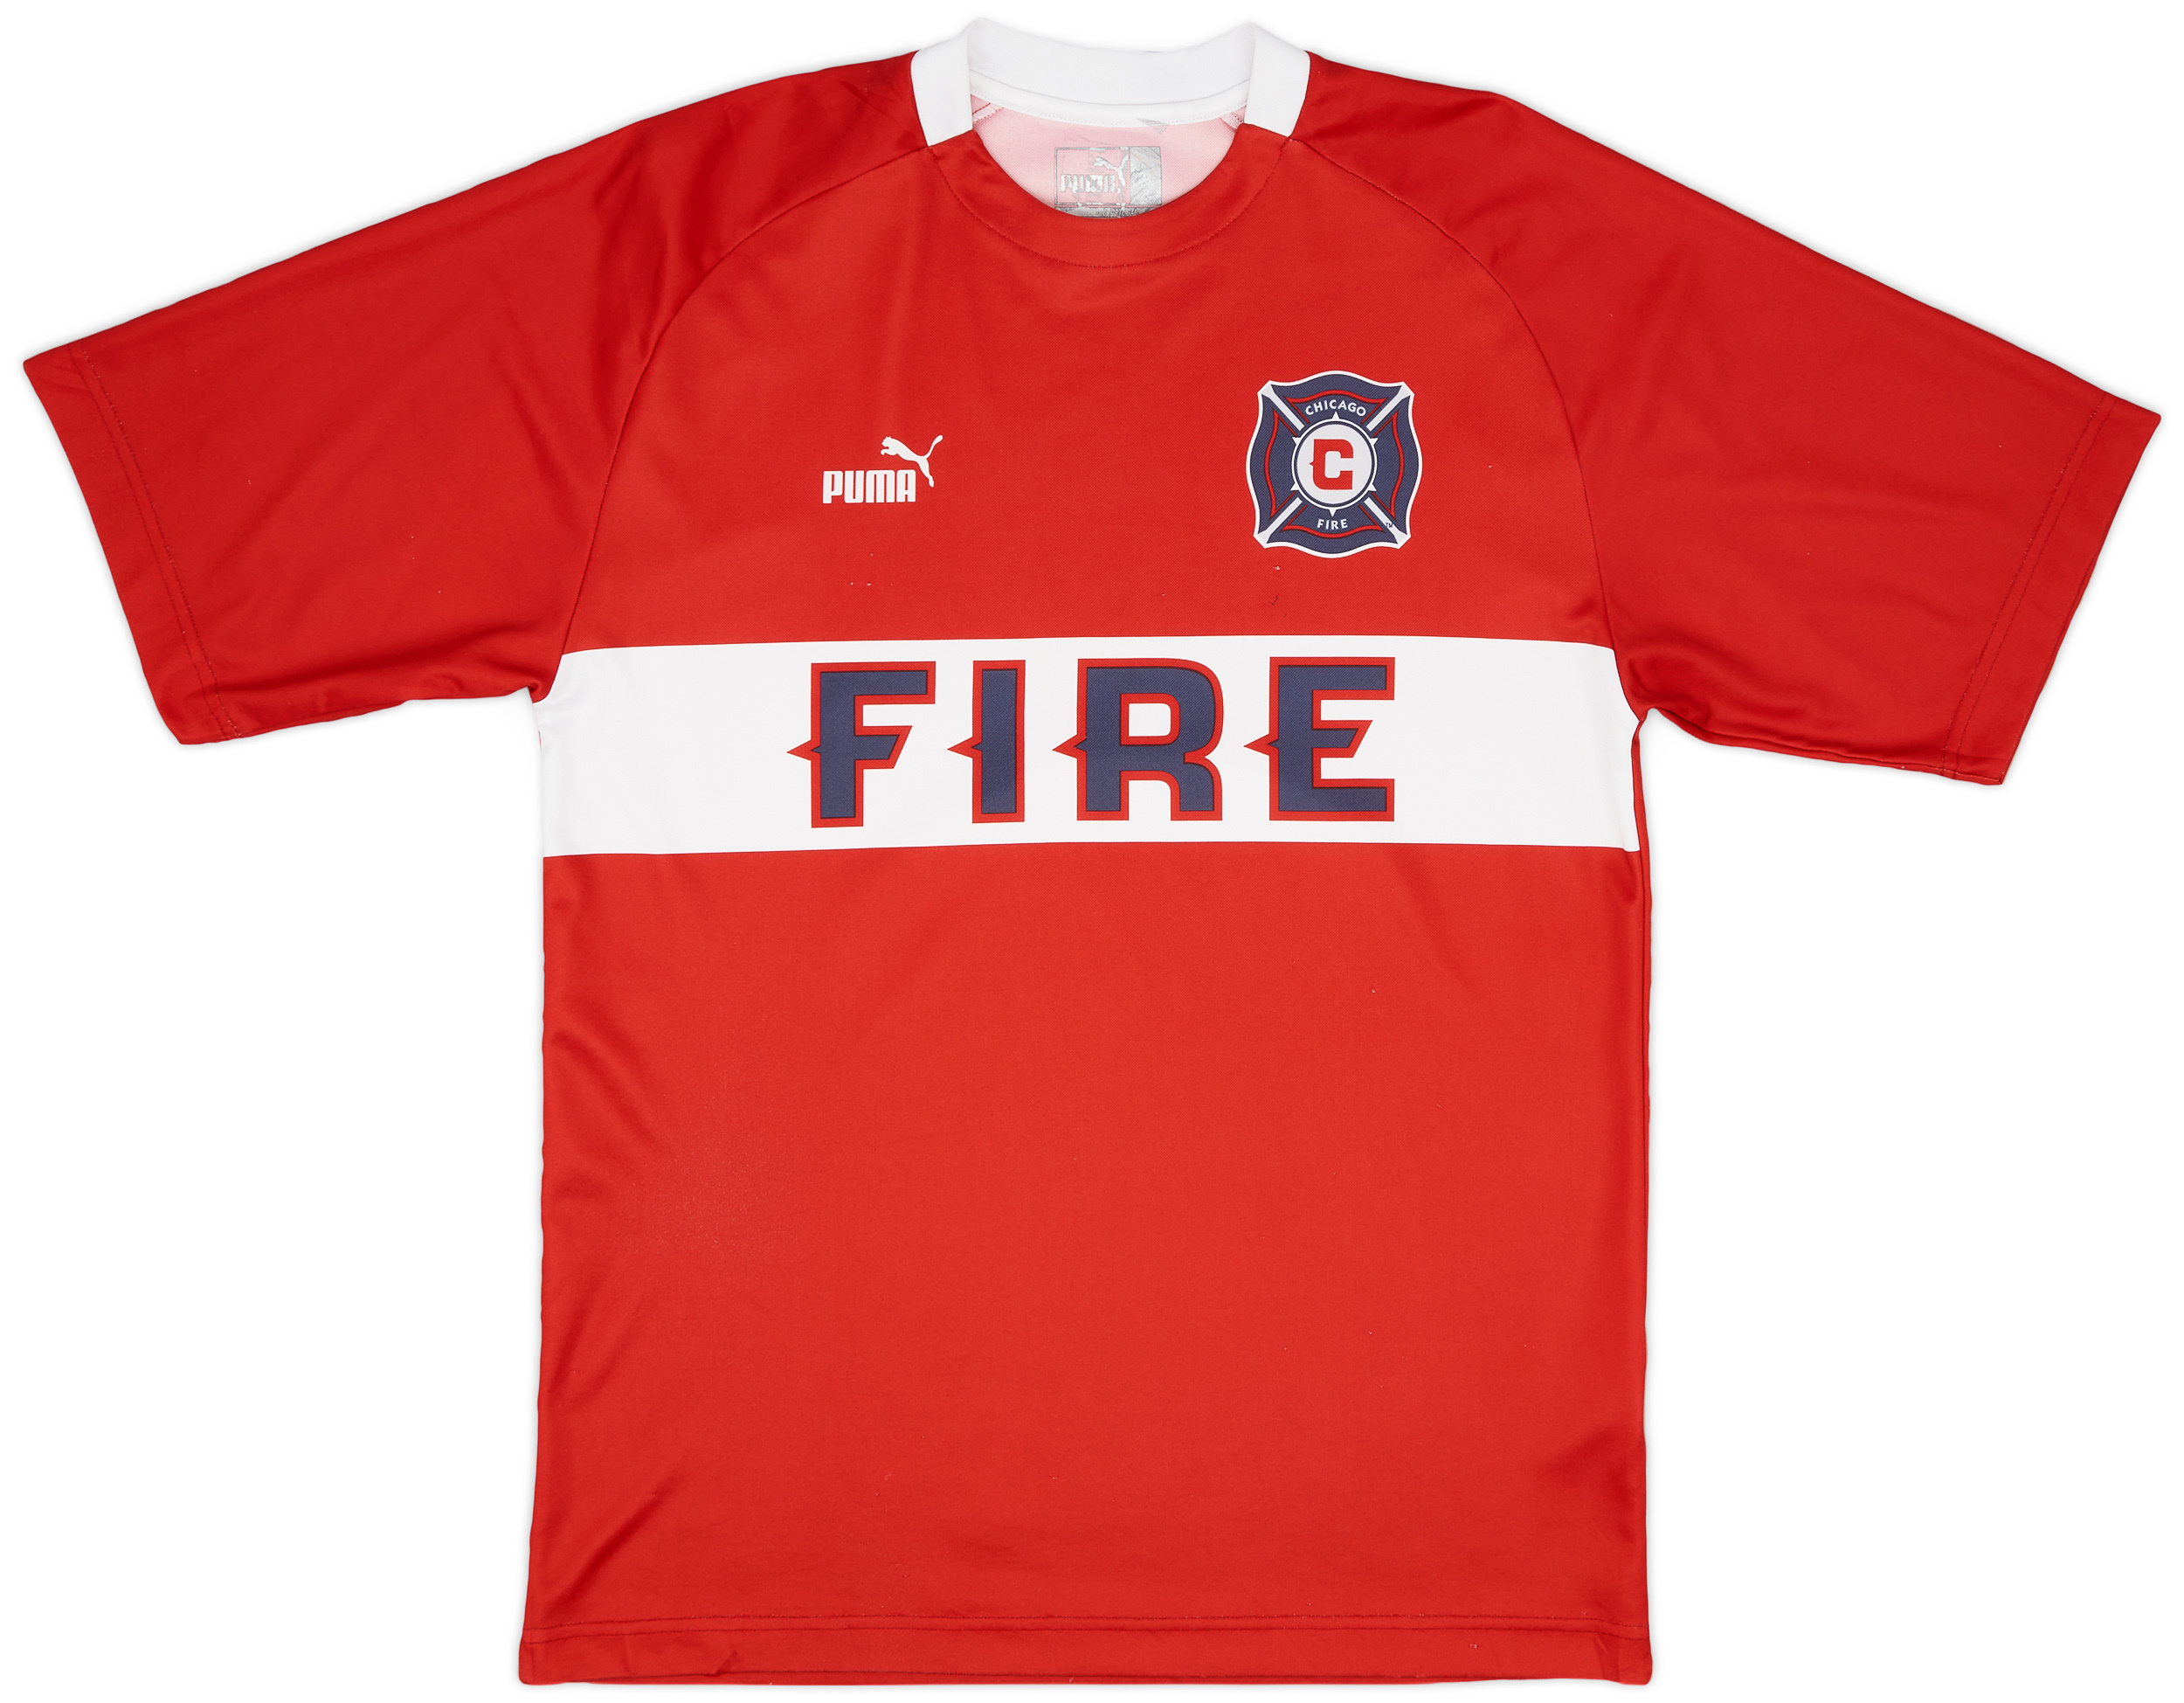 2003-04 Chicago Fire Home Shirt - 8/10 - ()